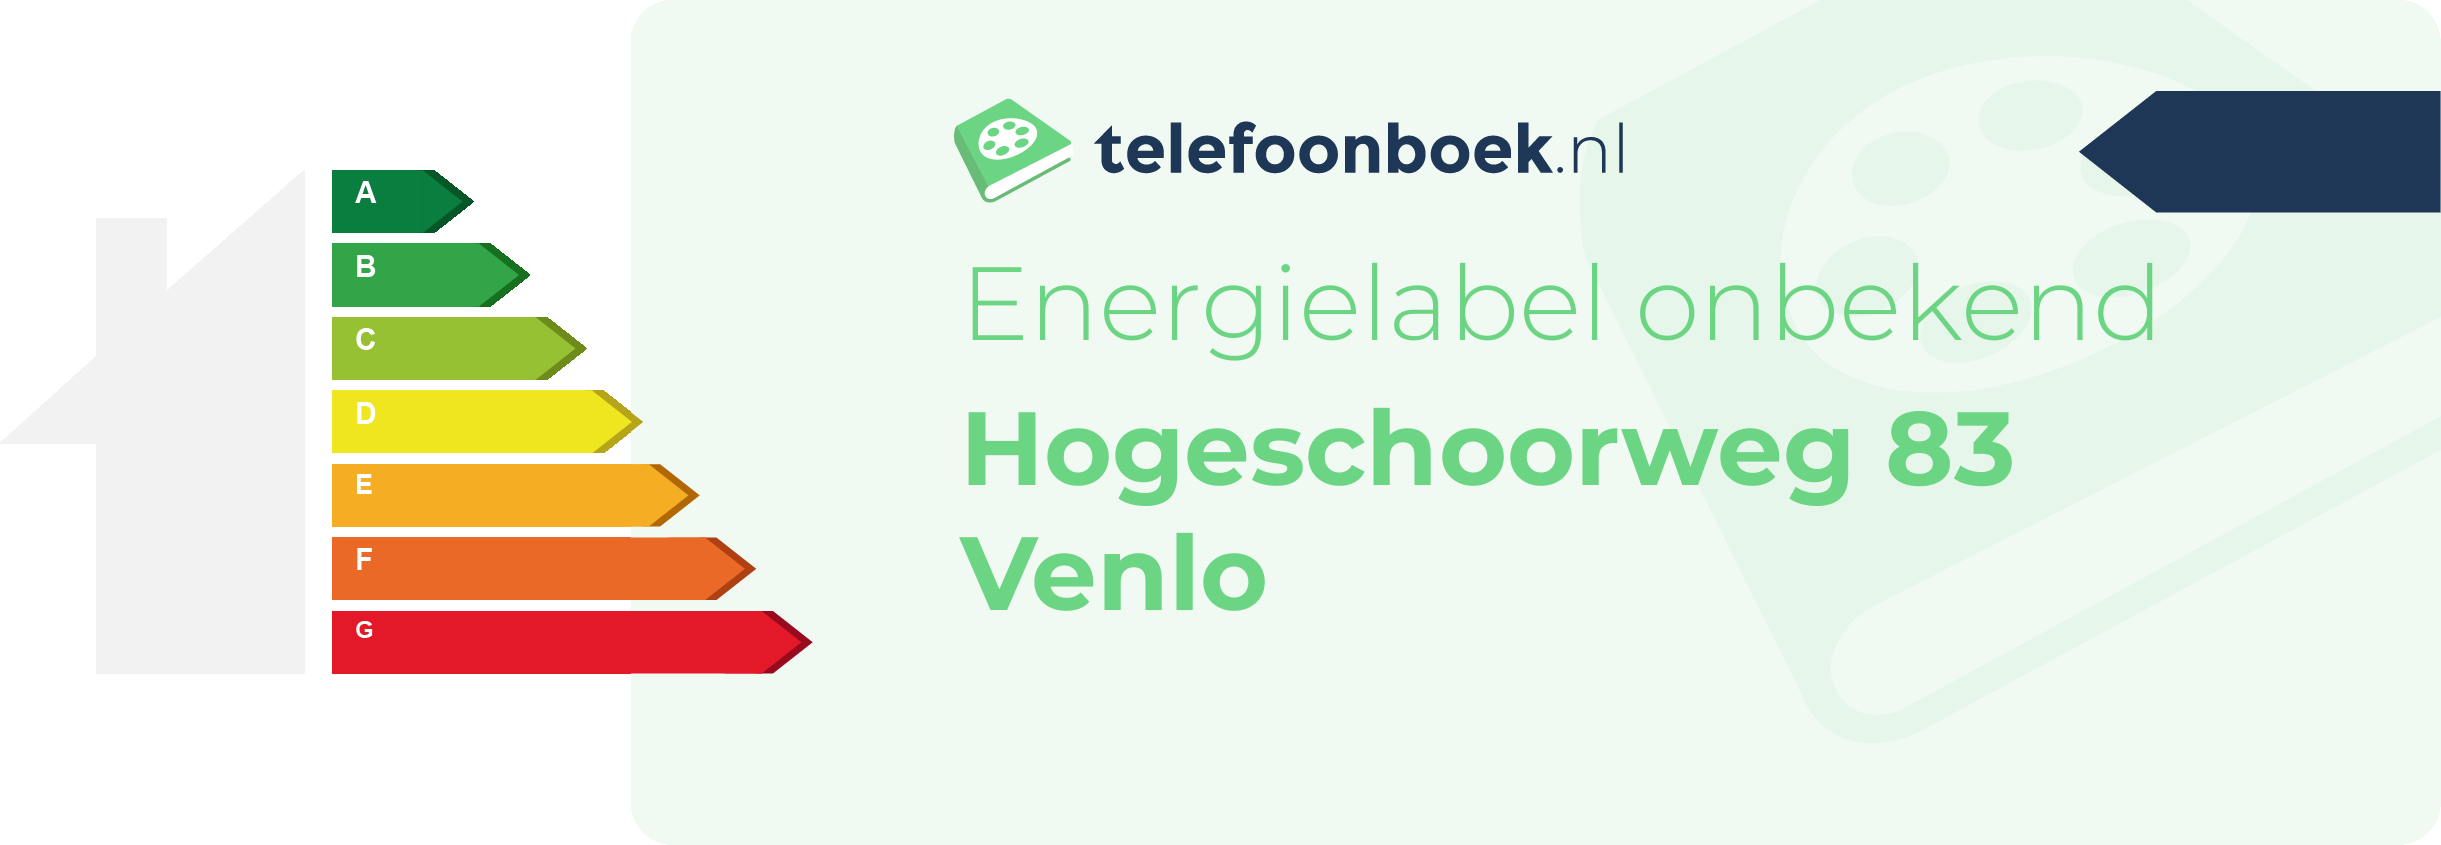 Energielabel Hogeschoorweg 83 Venlo